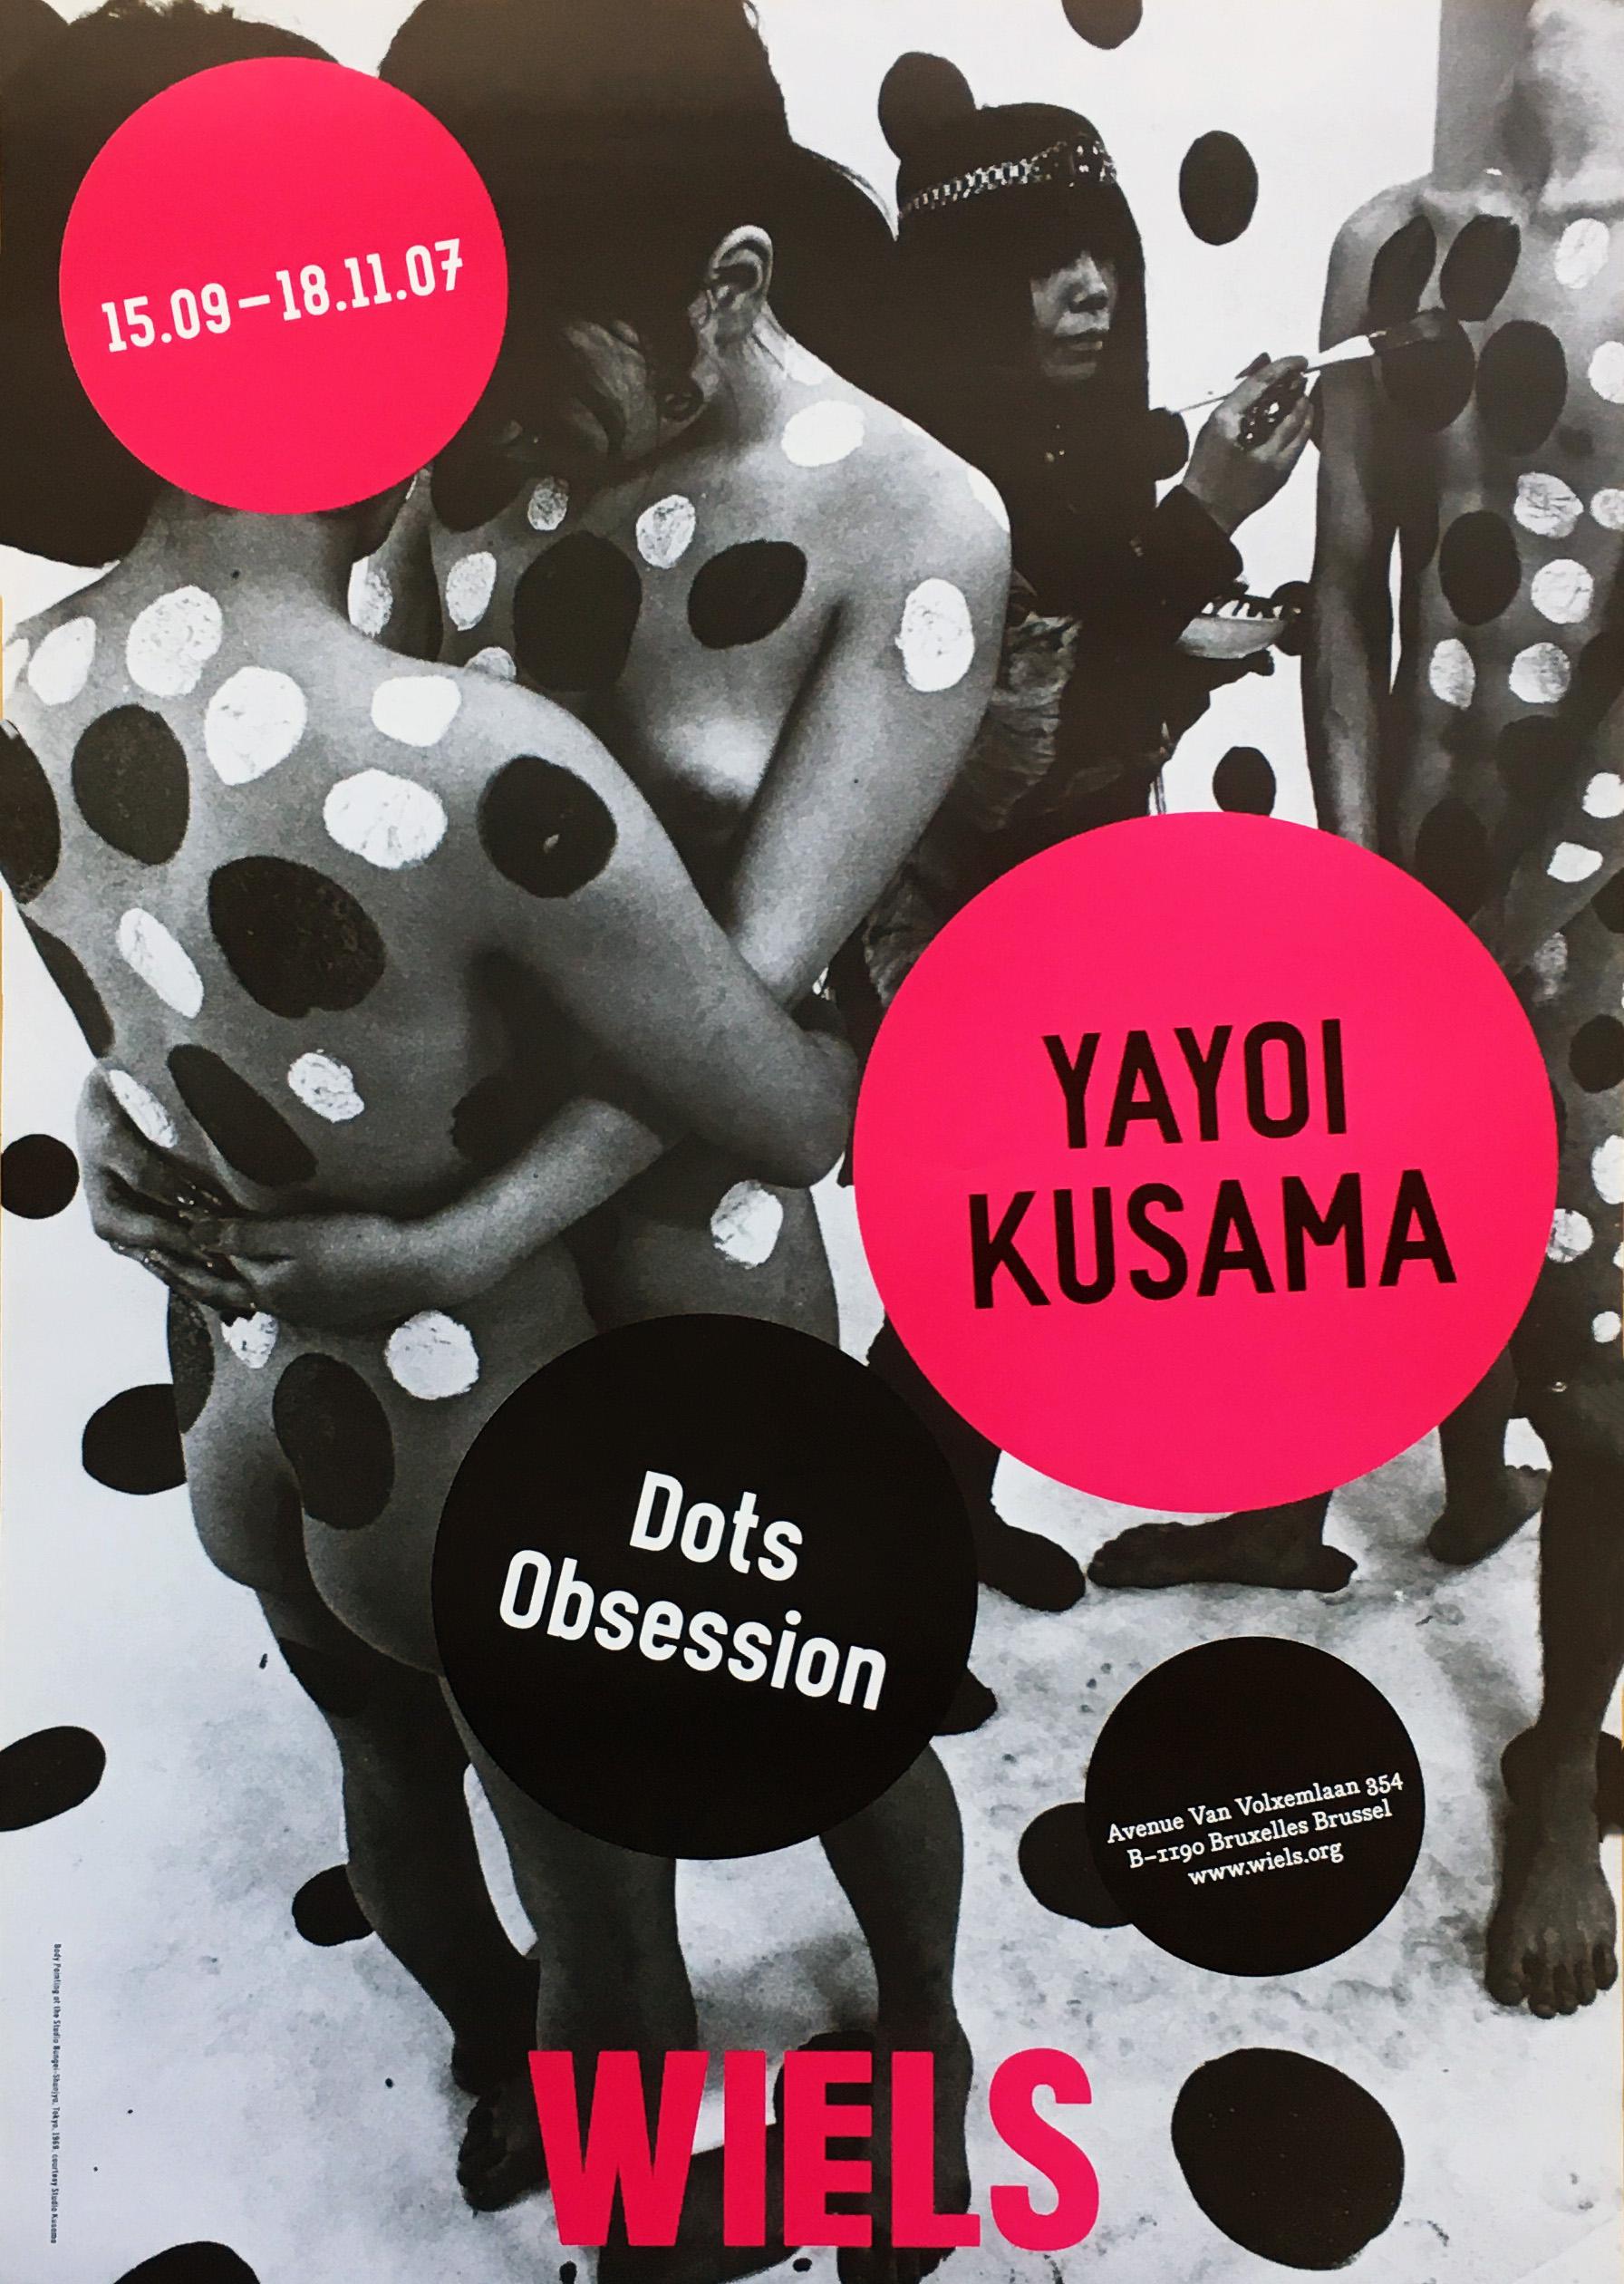 yayoi kusama exhibition poster